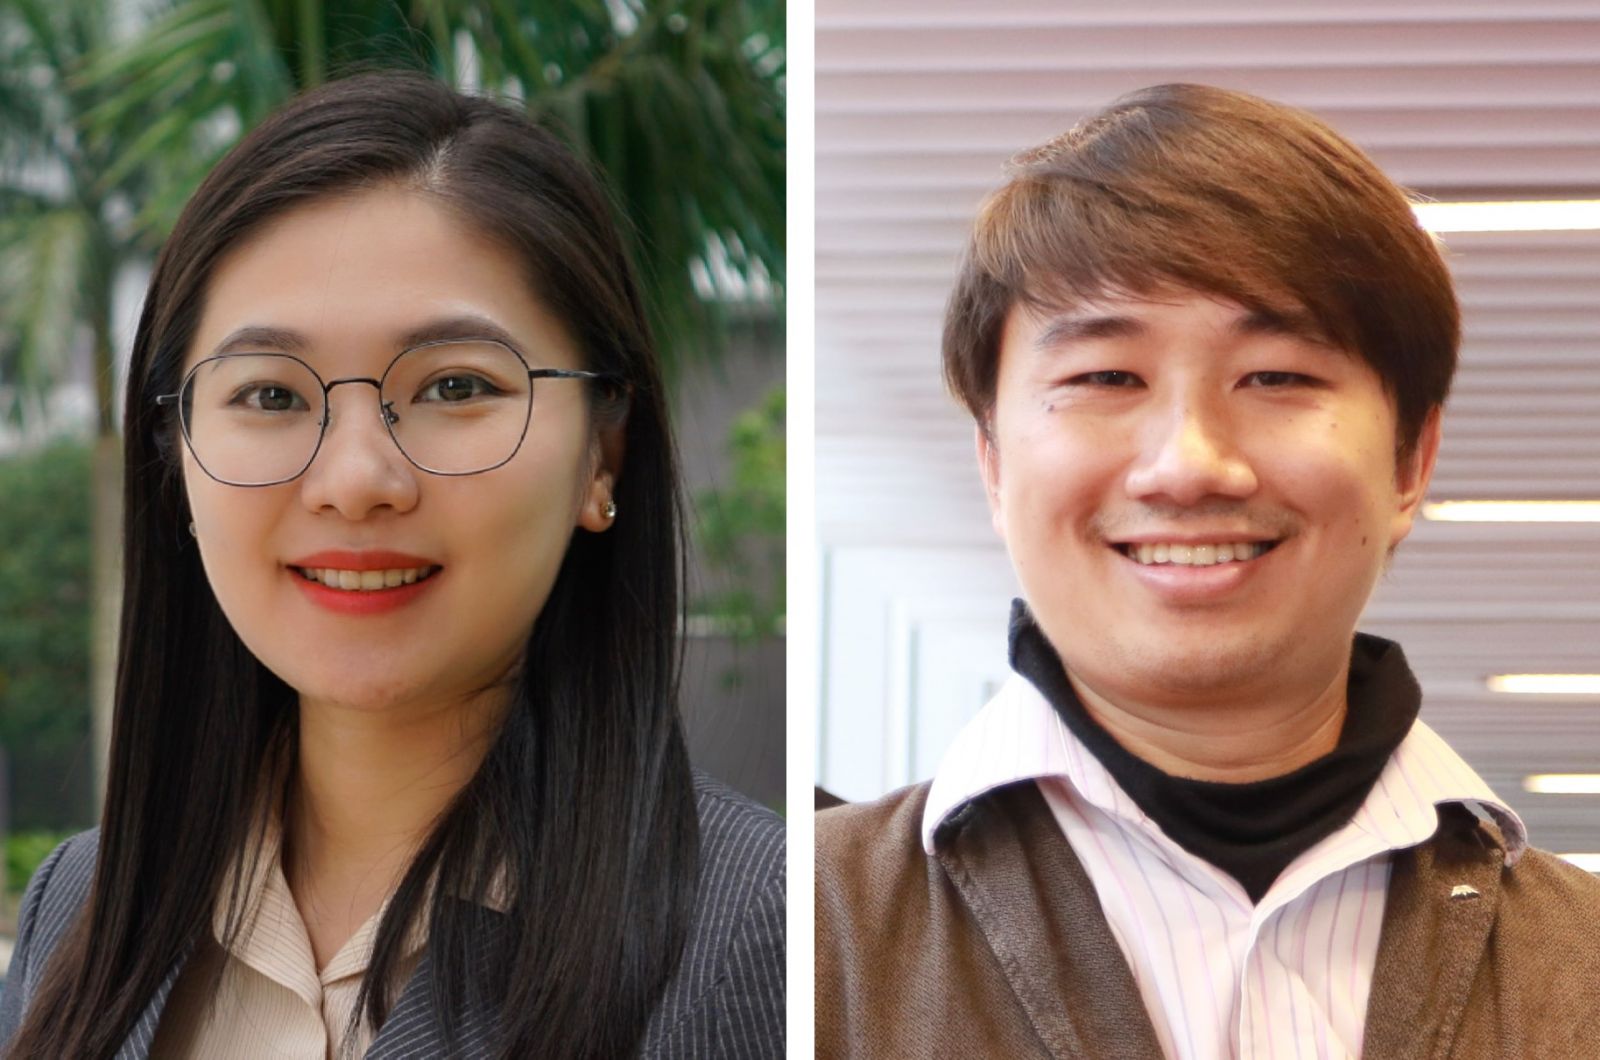 Giảng viên ngành Kinh doanh trên ứng dụng blockchain Đại học RMIT, Tiến sĩ Võ Thị Hồng Diễm (trái) và Thạc sĩ Hà Xuân Sơn (phải).